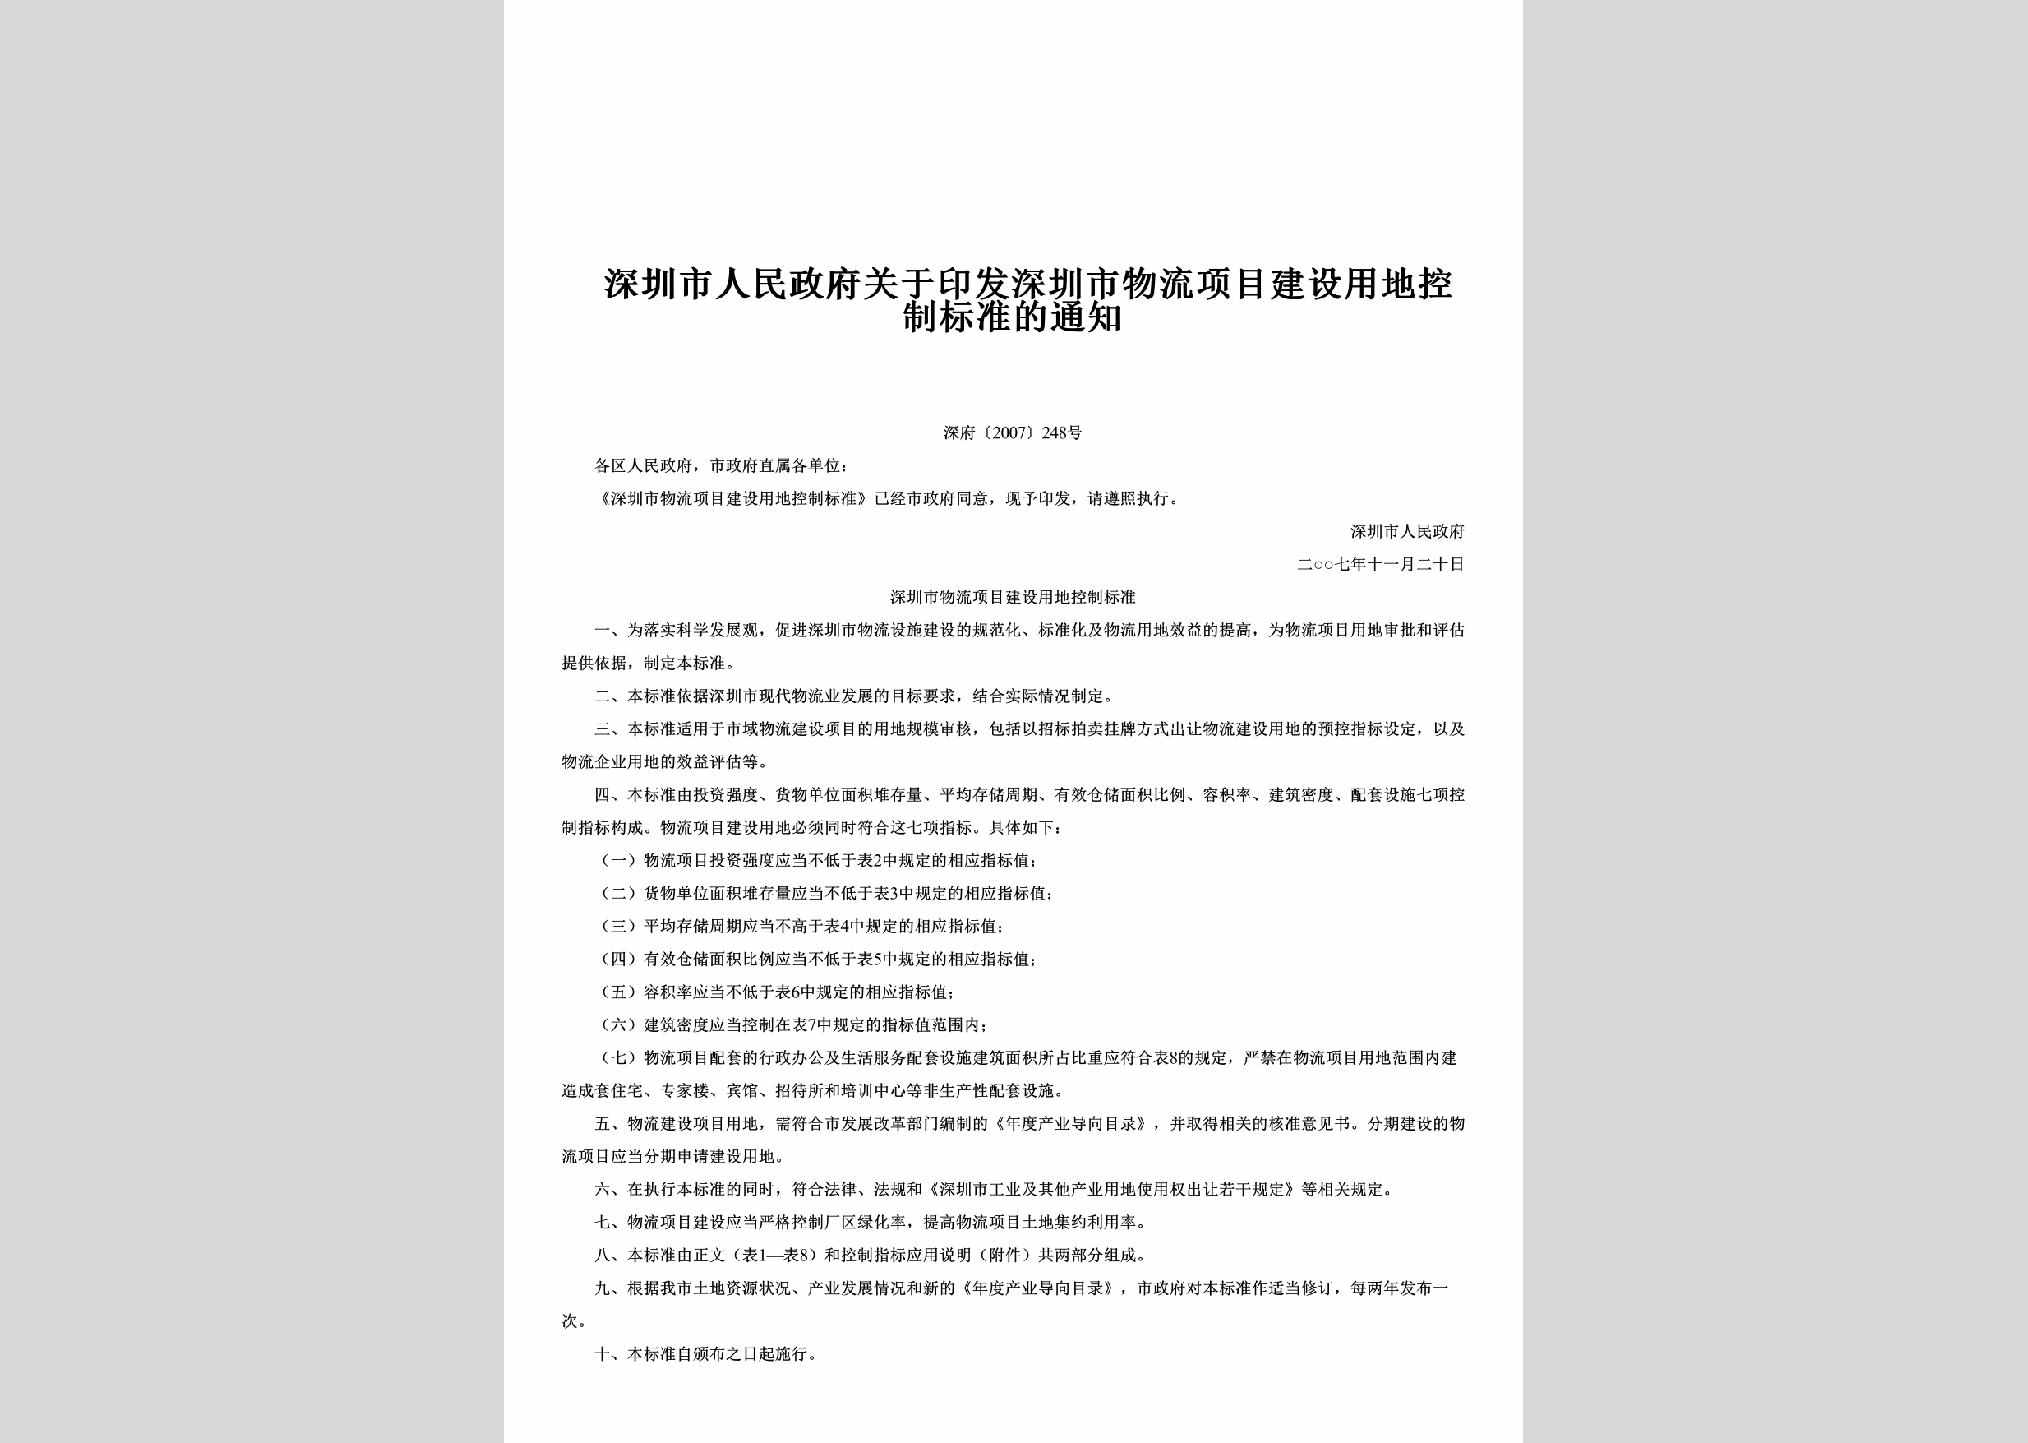 深府[2007]248号：关于印发深圳市物流项目建设用地控制标准的通知